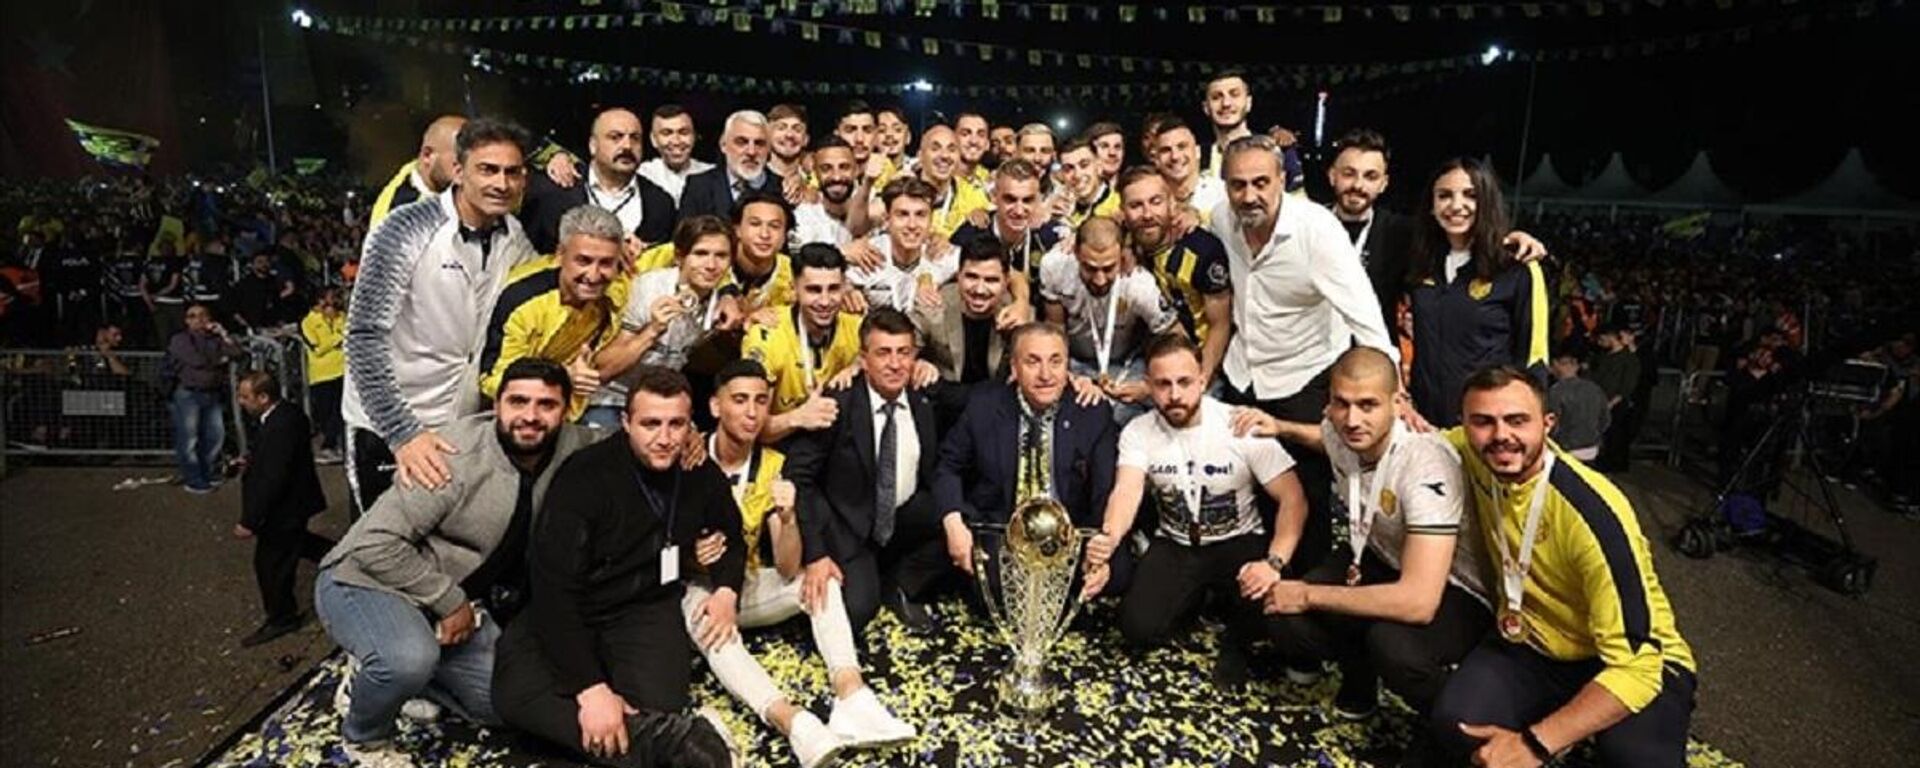 Spor Toto 1. Lig'de şampiyon olarak Süper Lig'e yükselen MKE Ankaragücü, kupasını düzenlenen törenle aldı. - Sputnik Türkiye, 1920, 21.05.2022